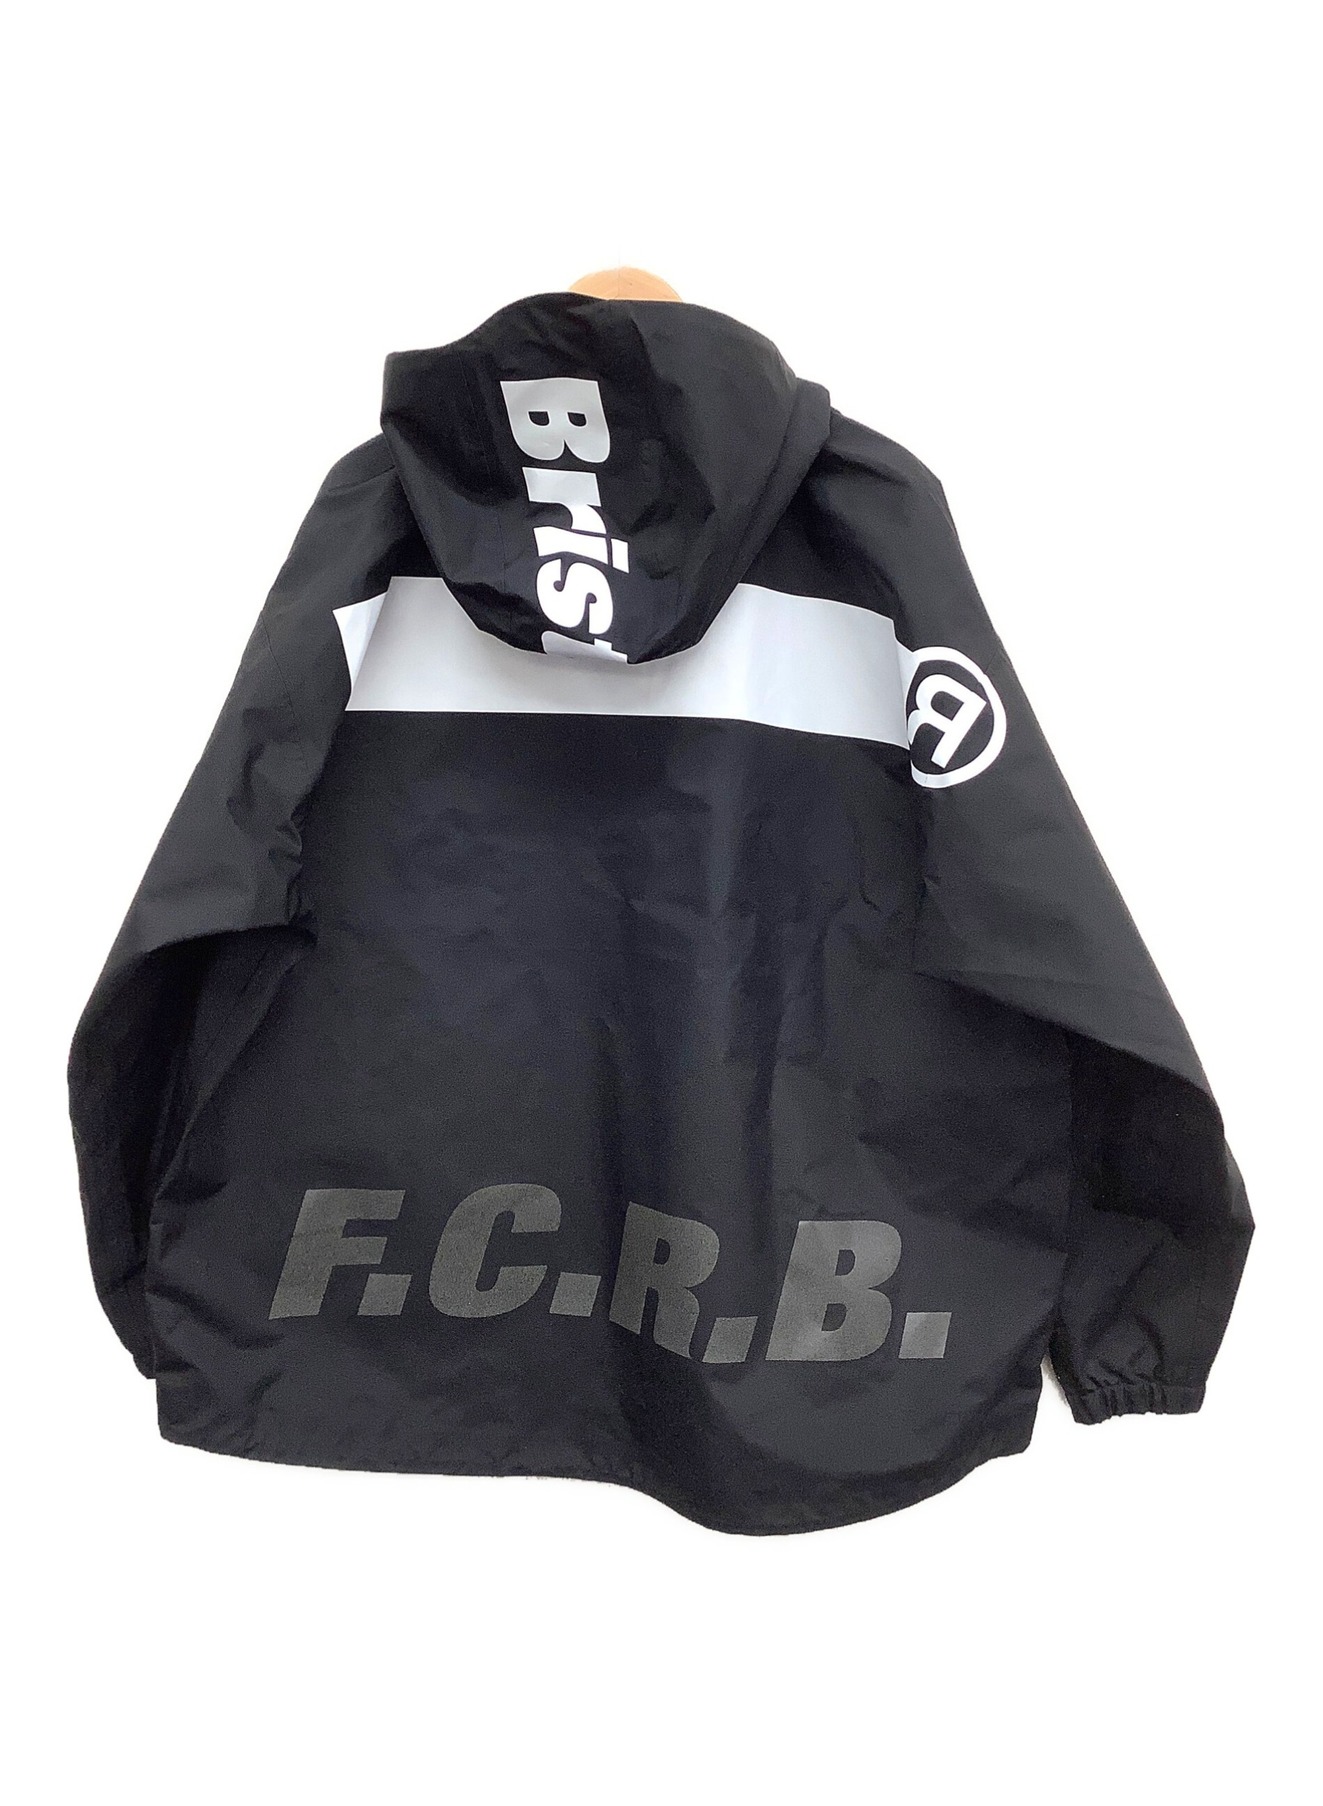 F.C.R.B.×READYMADE (エフシーレアルブリストル×レディメイド) 3L HALF ZIP ANORAK ブラック サイズ:Sサイズ